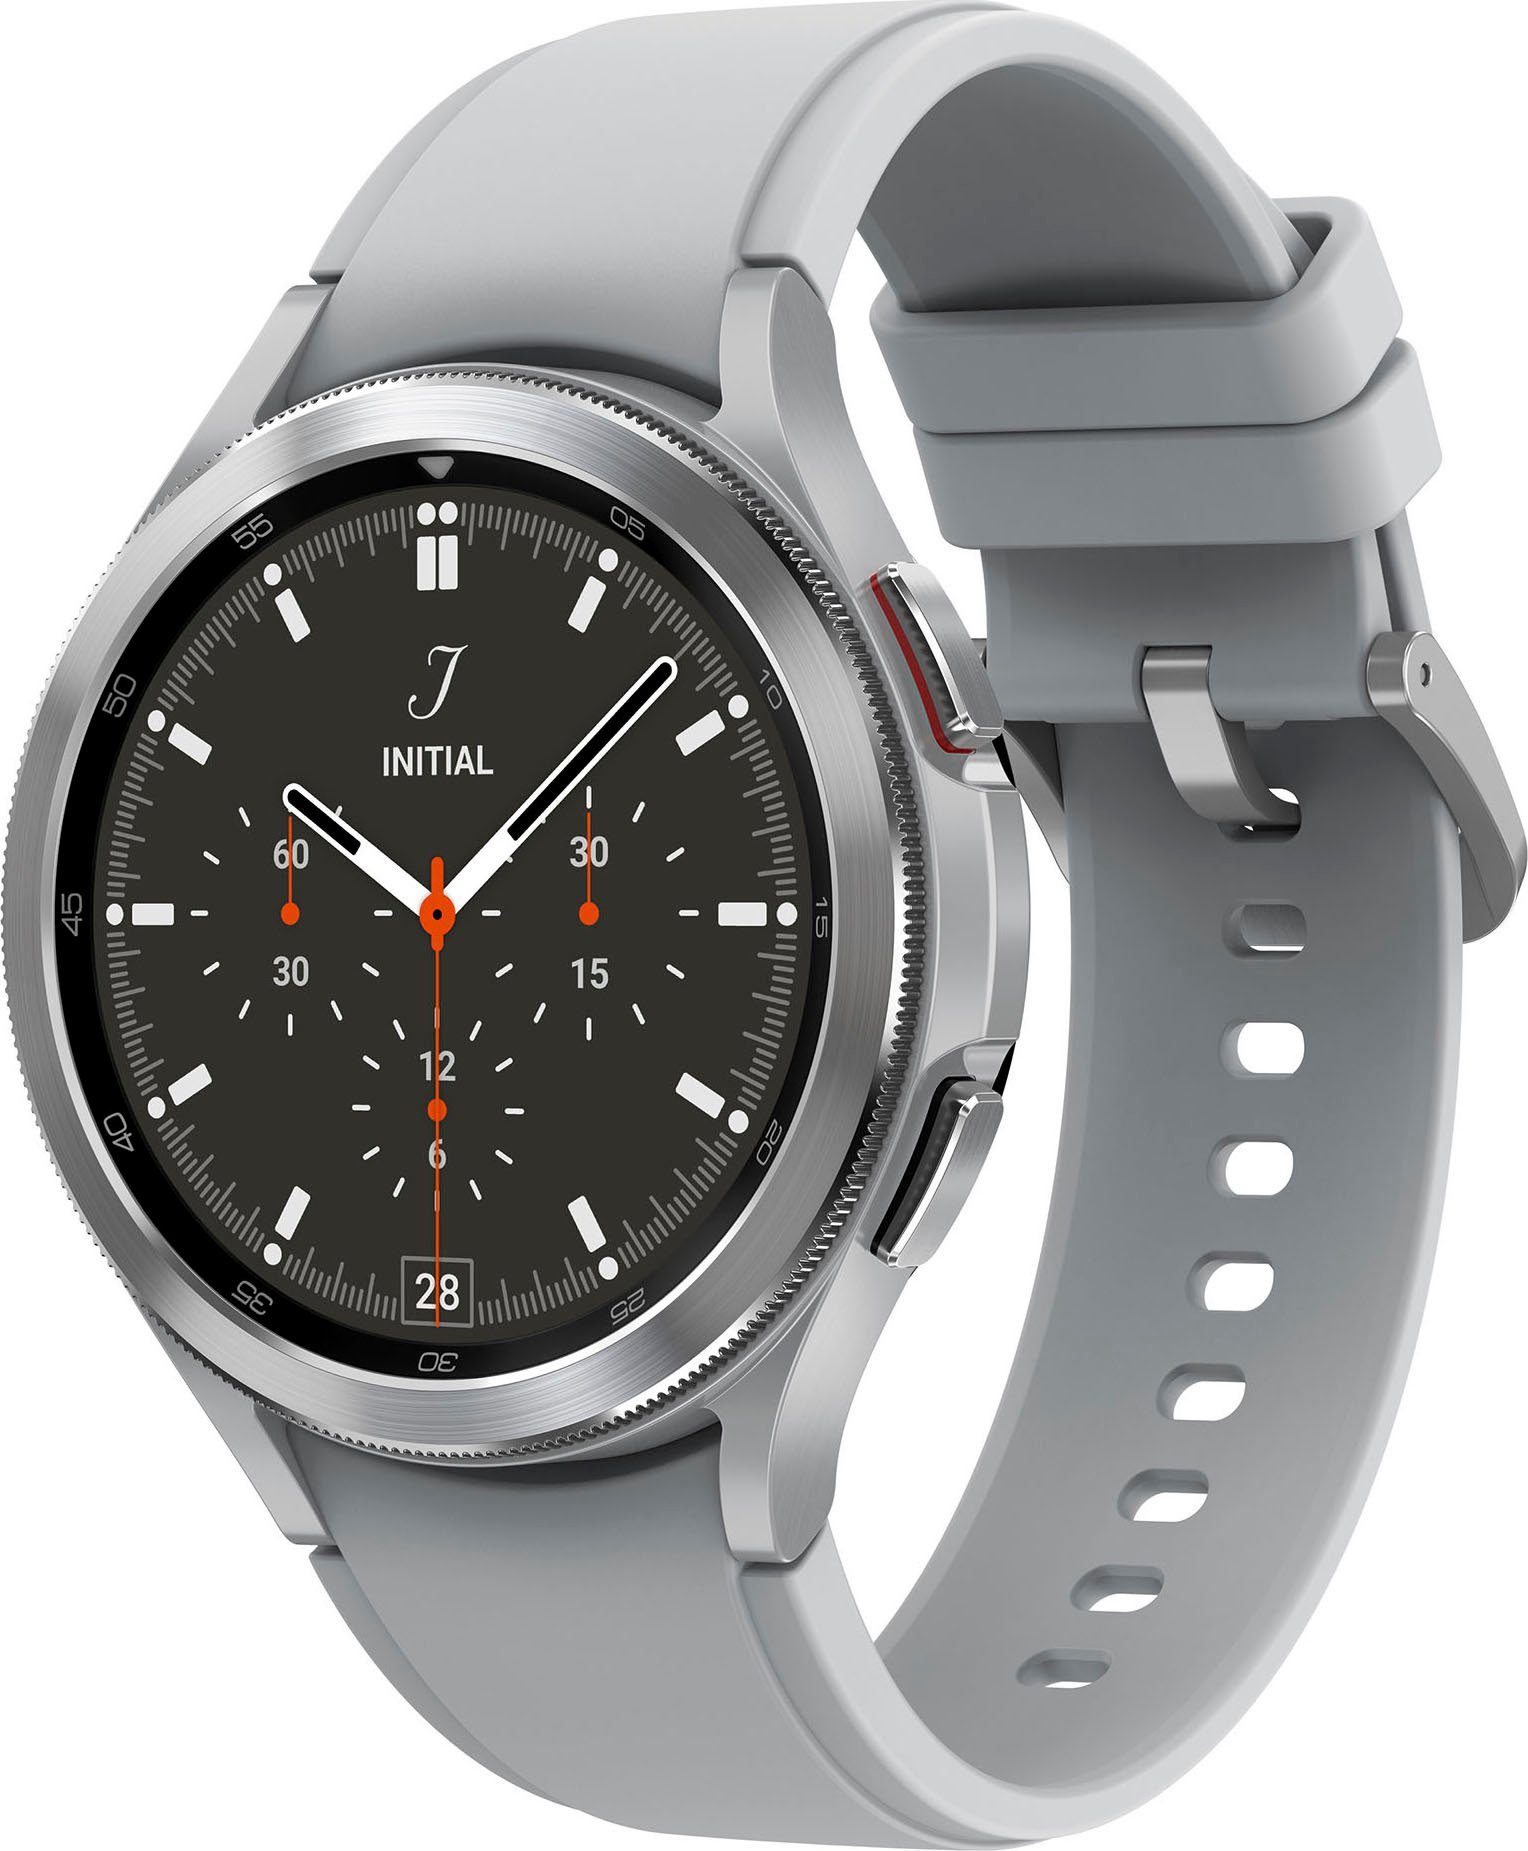 Samsung Smartwatch online kaufen » Galaxy Watch | OTTO